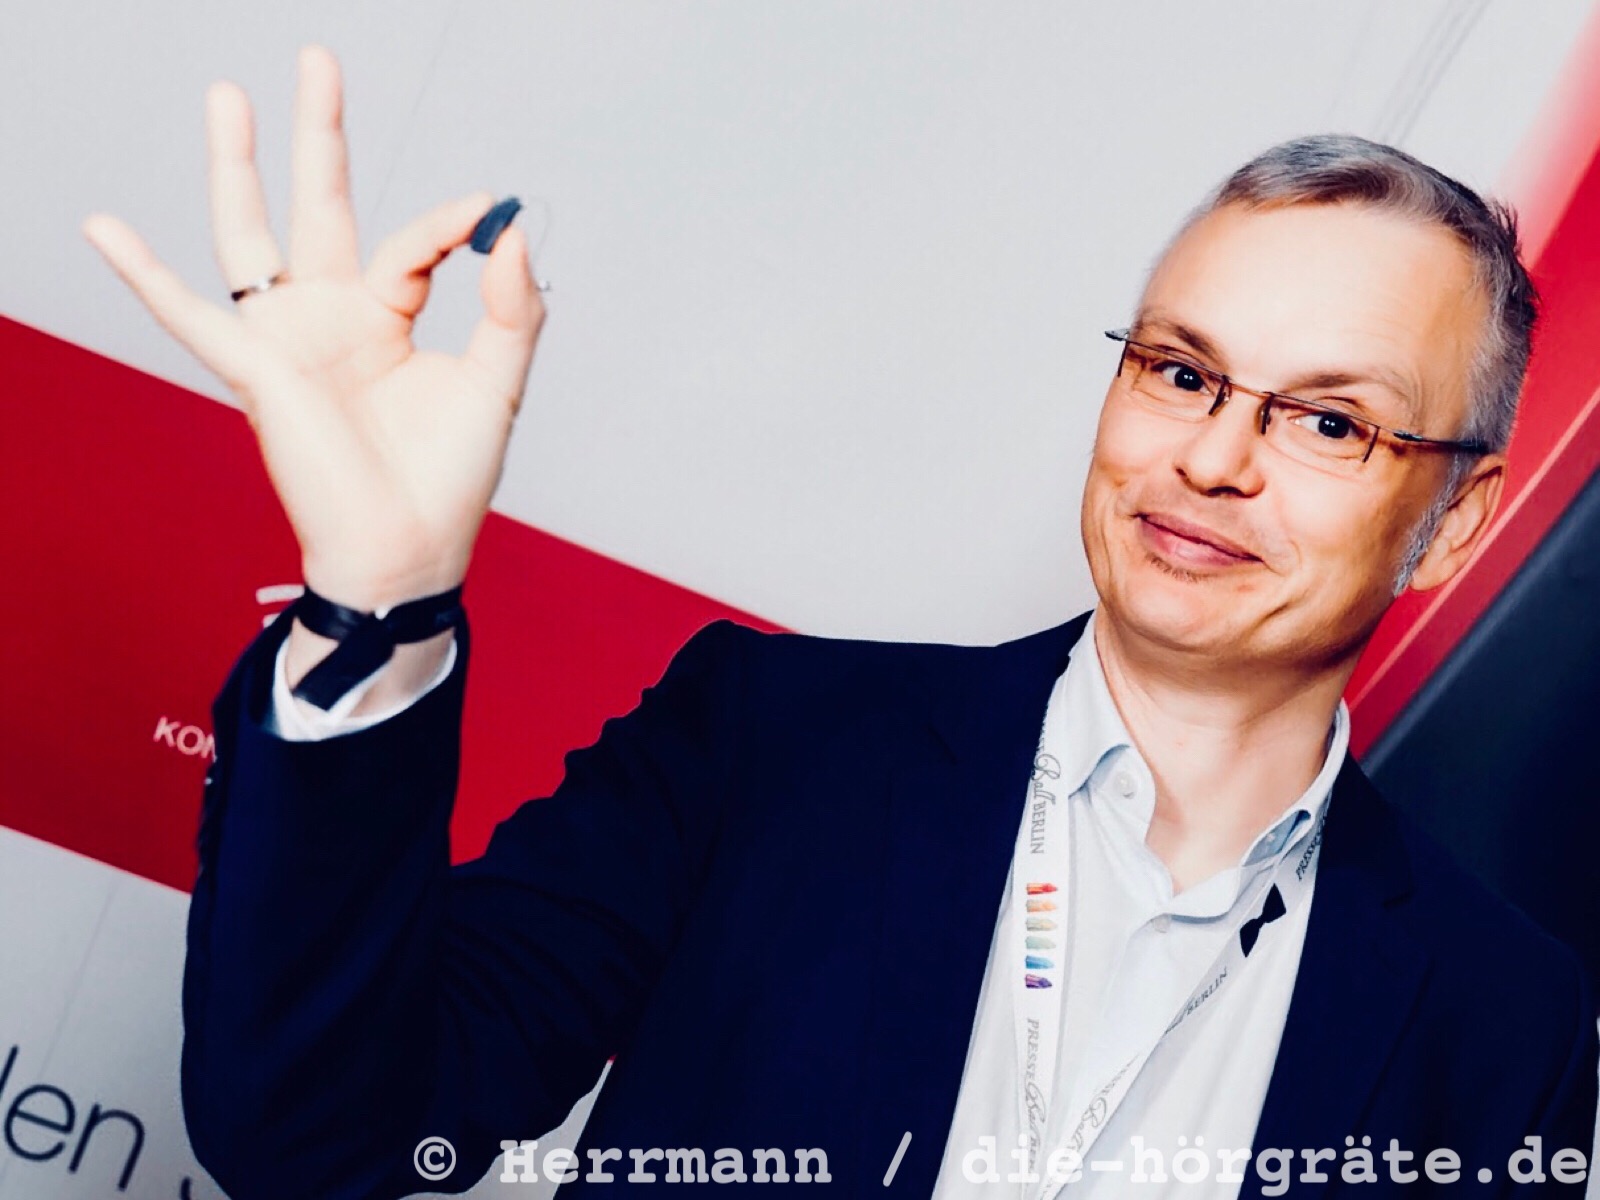 der Blog-Autor Martin Schaarschmidt lächelt in die Kamera und zeigt ein kleines Hörgerät, das er zwischen Daumen und Zeigefinger hält